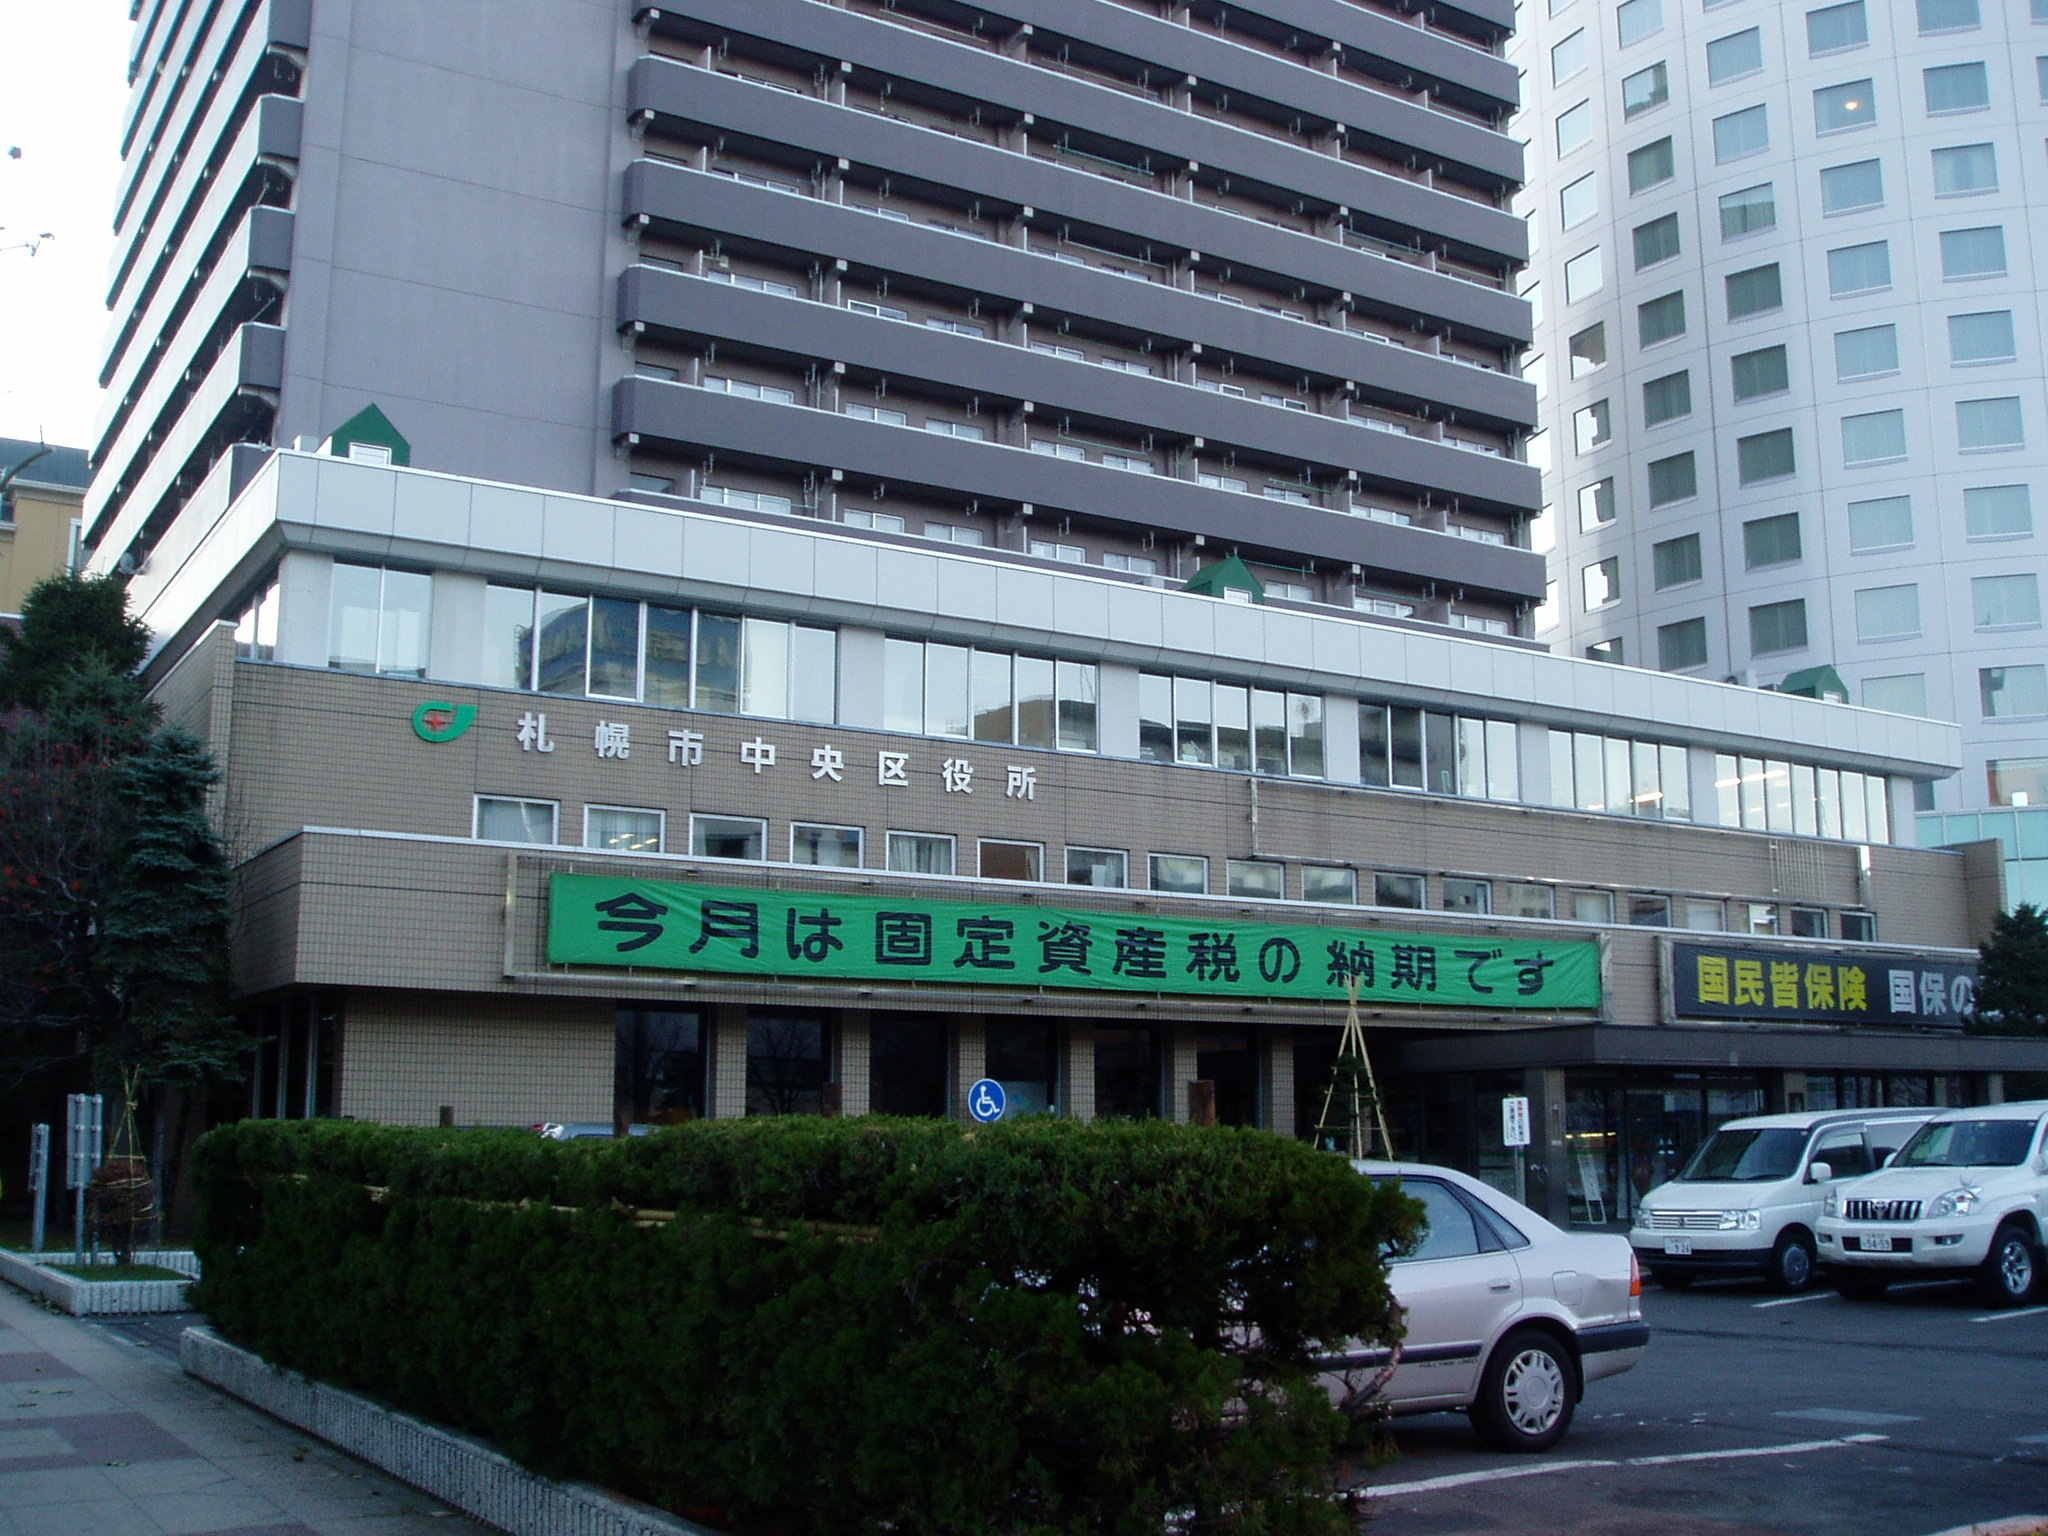 File Chuo Ward Office In Sapporo Jpg Wikimedia Commons